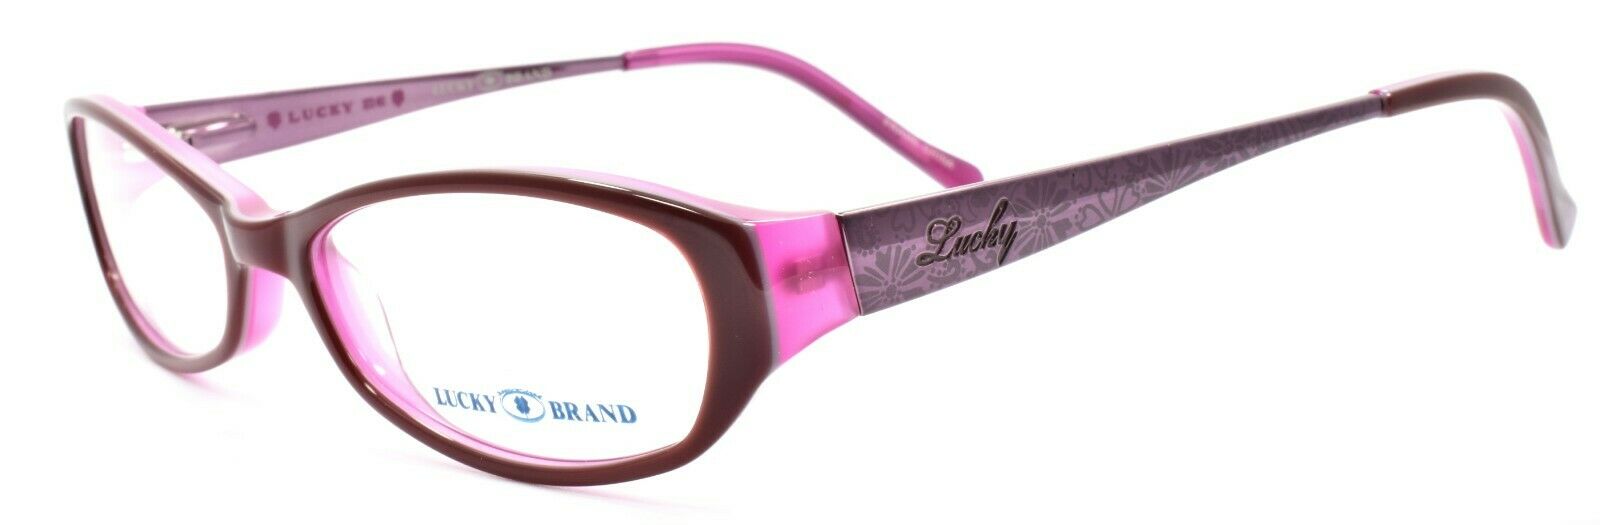 1-LUCKY BRAND Beach Trip Women's Eyeglasses Frames SMALL 49-15-135 Burgundy + CASE-751286214970-IKSpecs